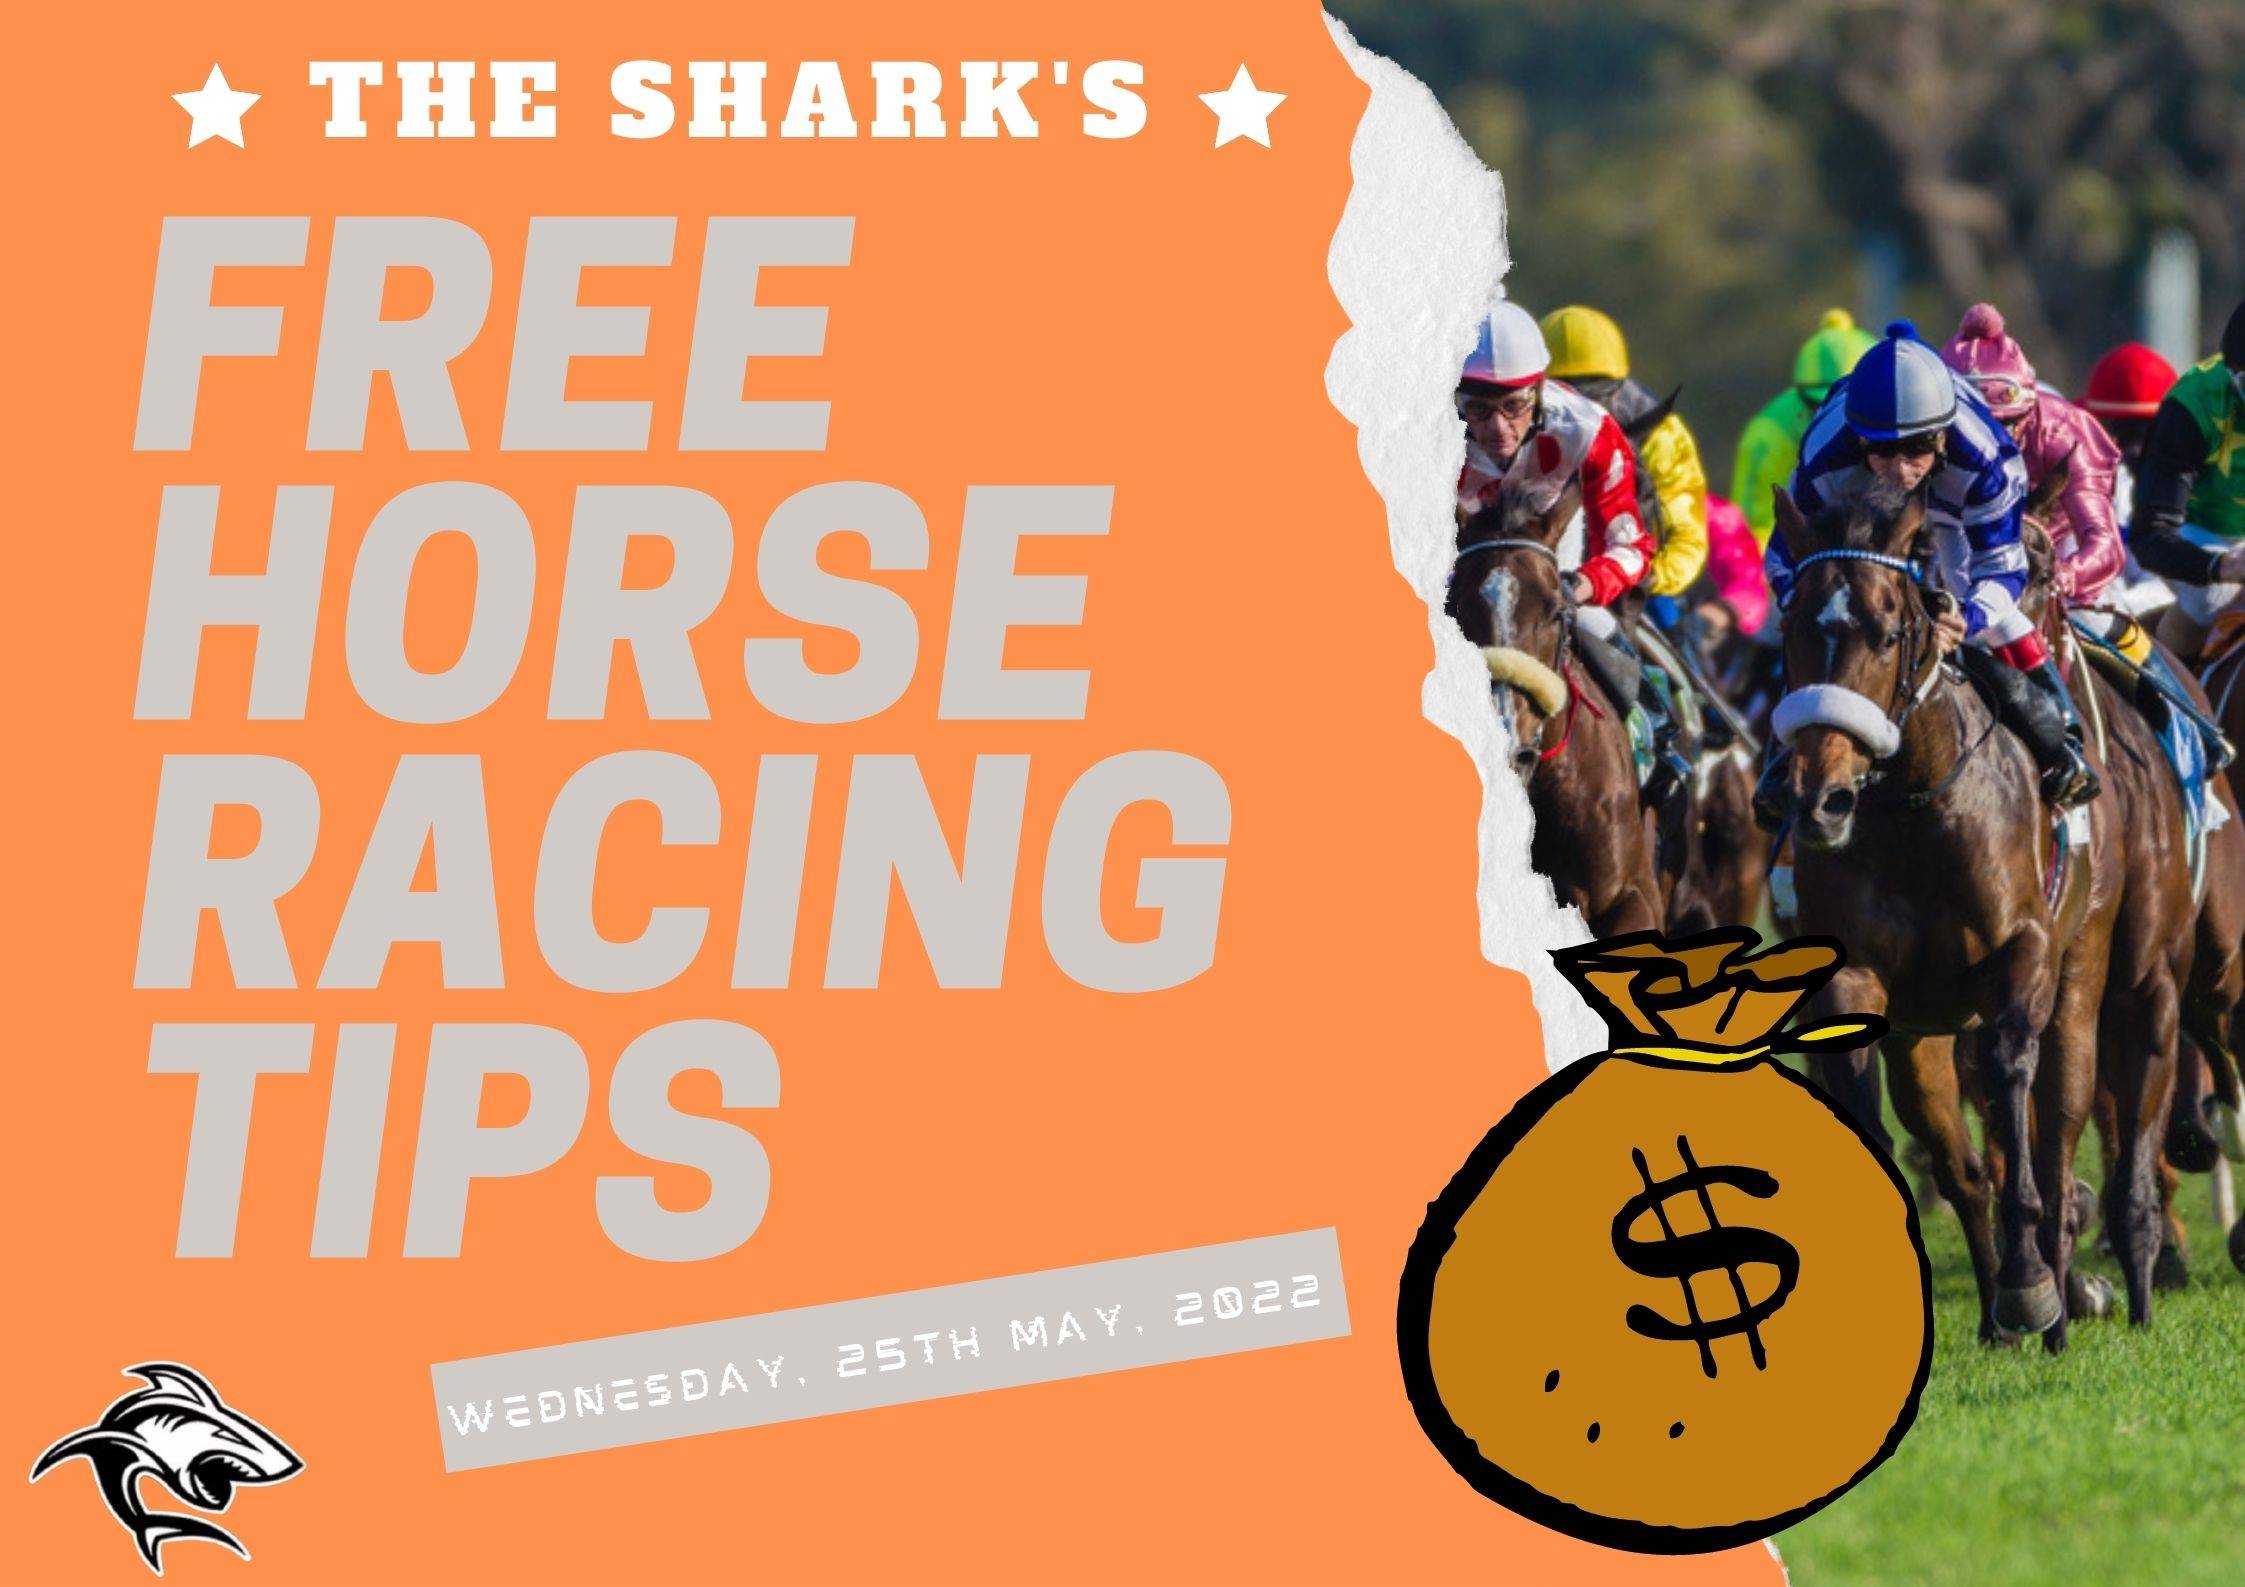 Free Horse Racing Tips - 25th May